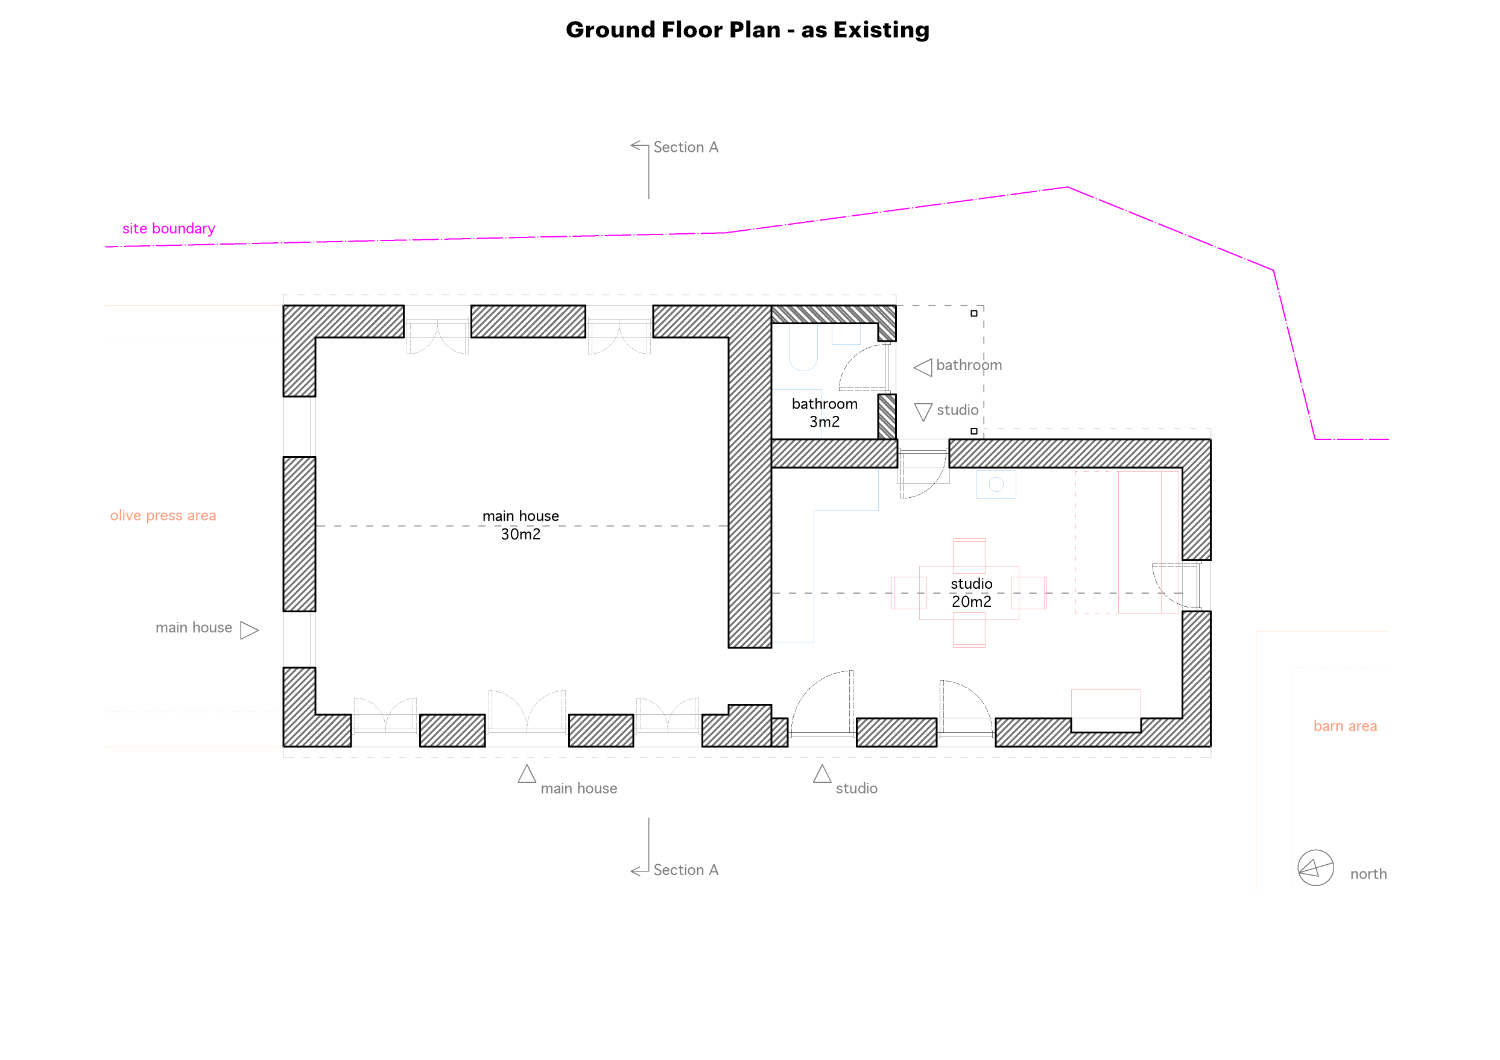 Rouvas Mathraki - Ground Floor Plan Existing